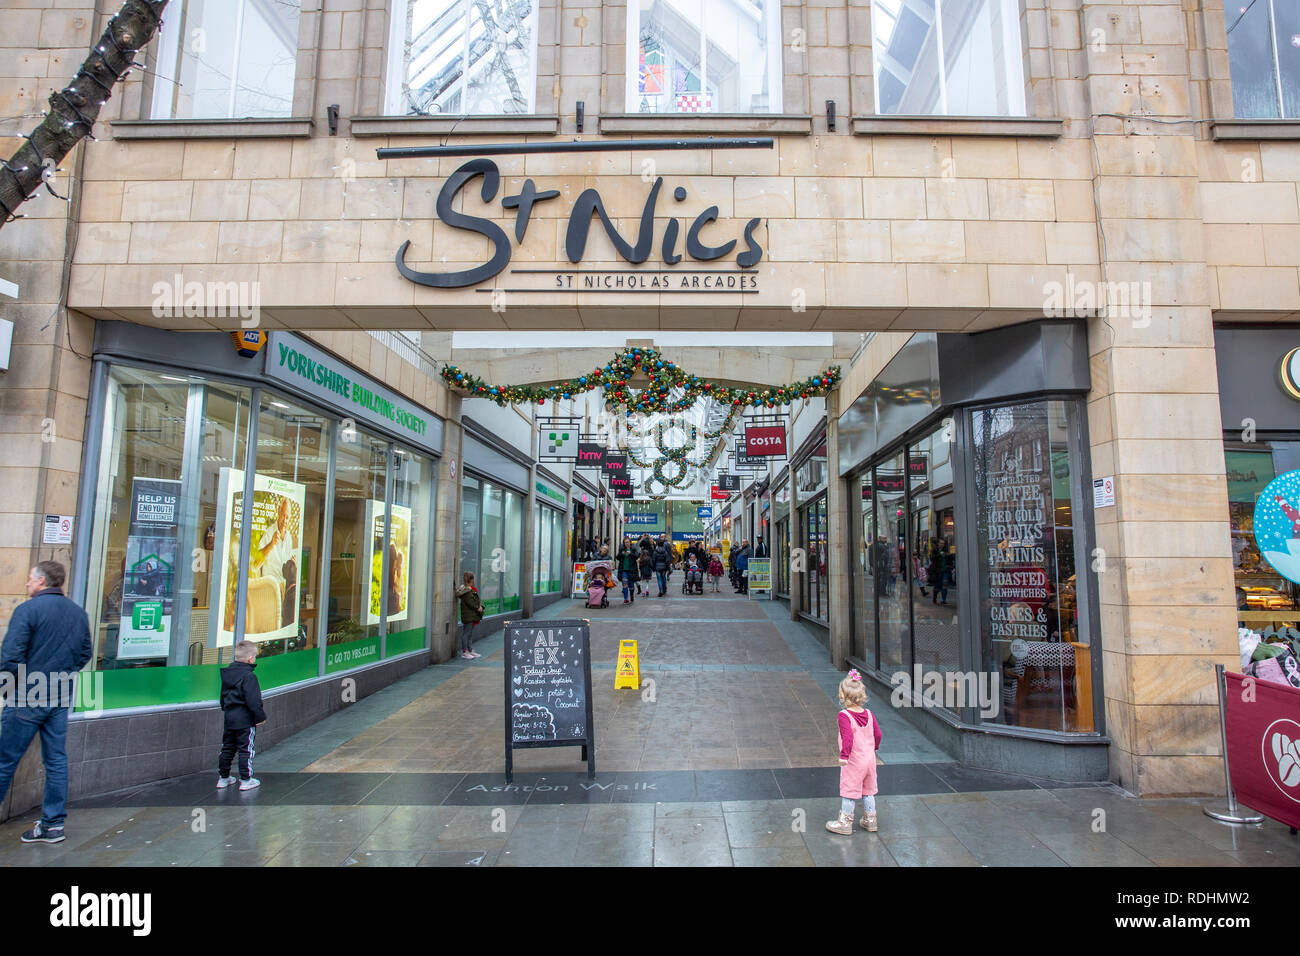 St Nic shopping mall arcade dans la ville de Lancaster, Lancashire, Angleterre Banque D'Images